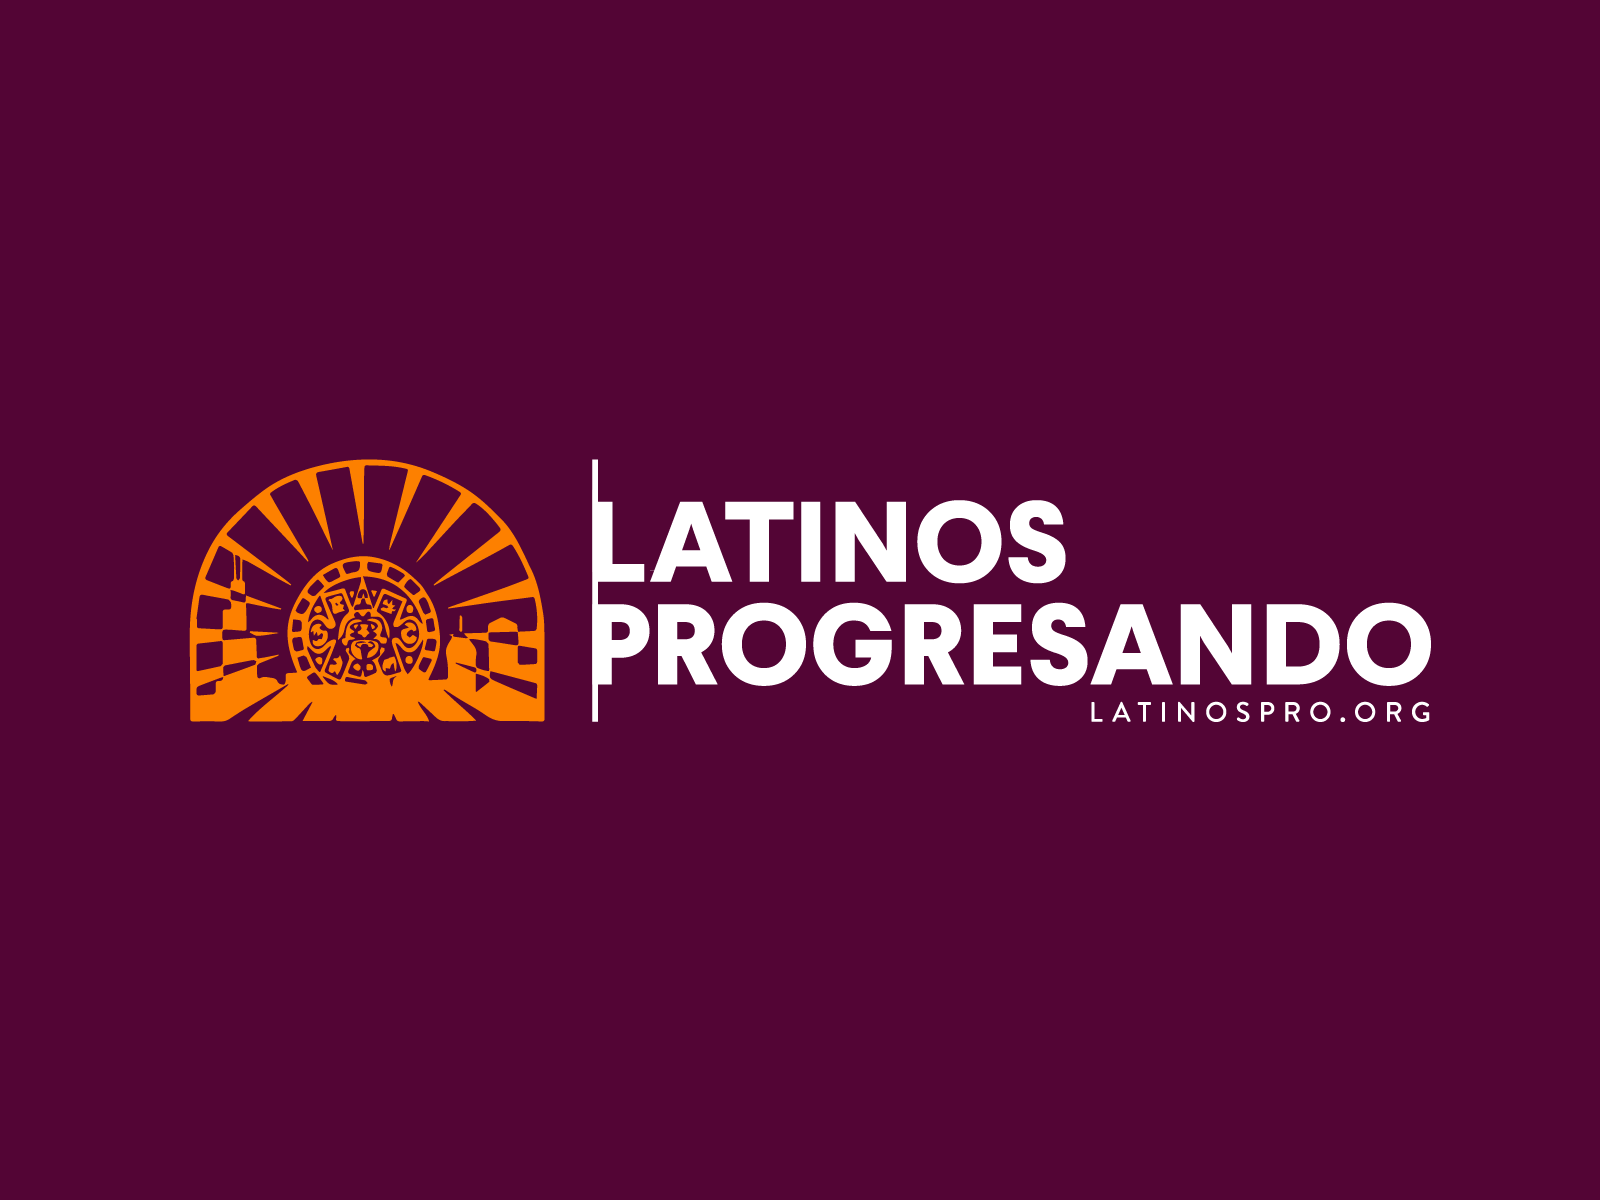 studio.bio - Latinos Progresando